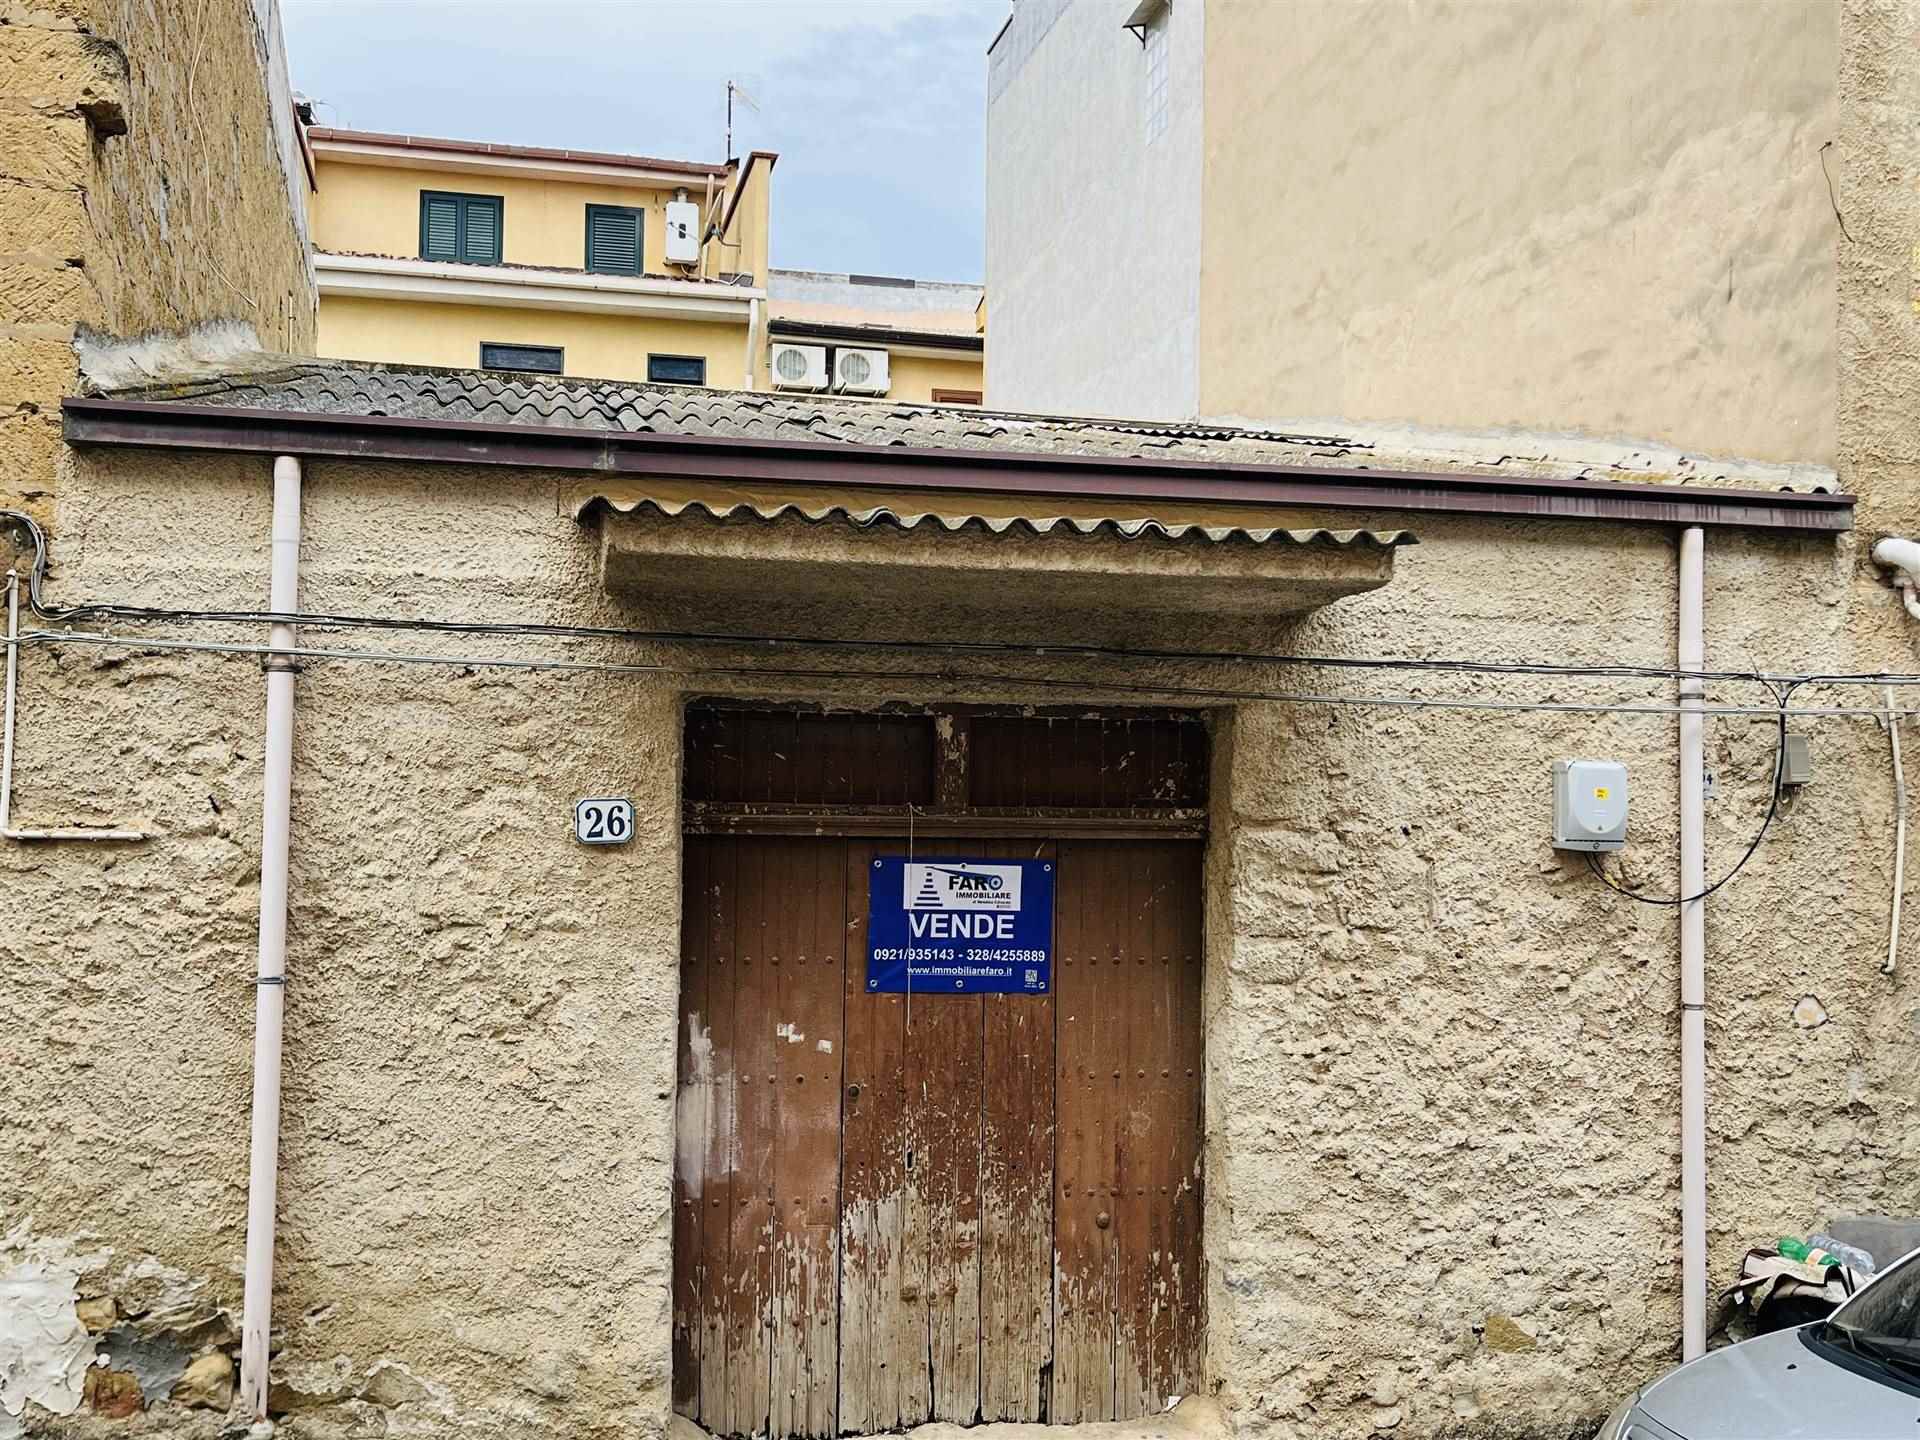 Magazzino in vendita a Campofelice di Roccella, 2 locali, prezzo € 75.000 | PortaleAgenzieImmobiliari.it